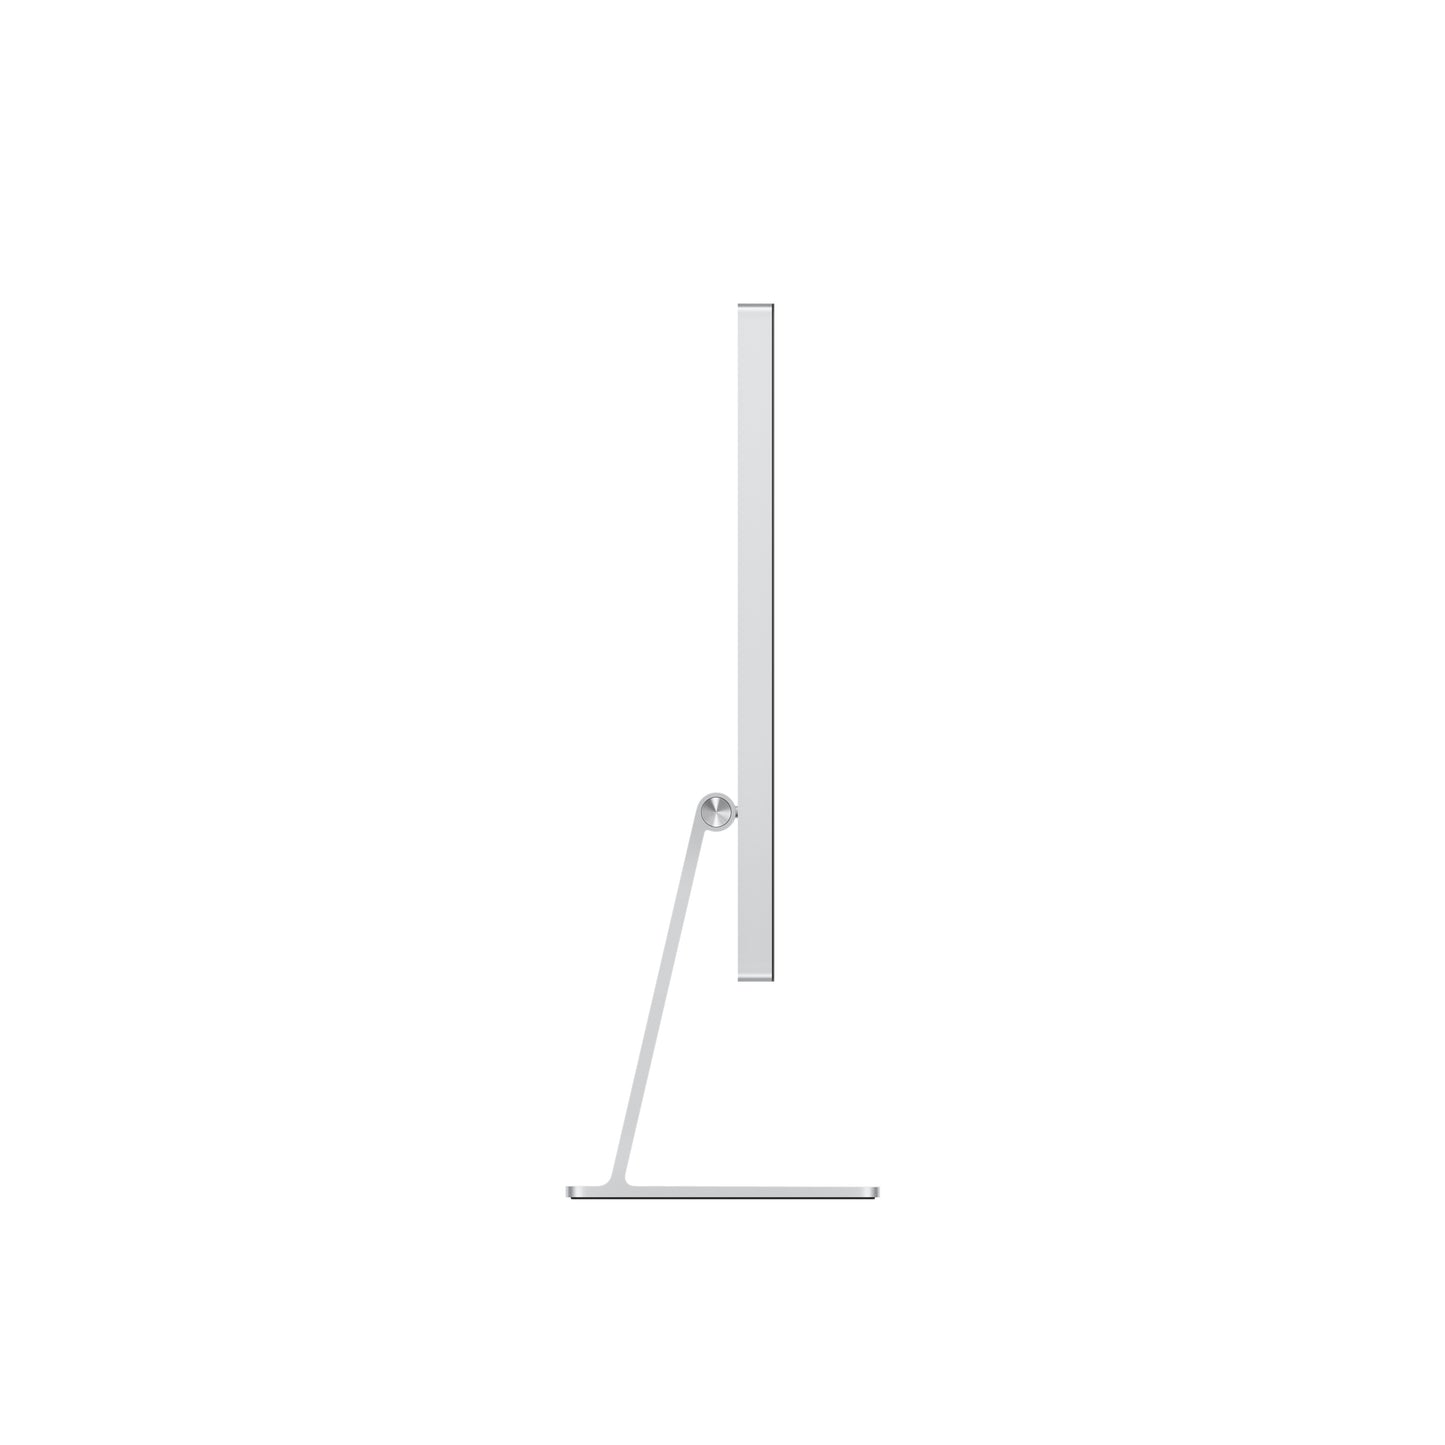 Apple Studio Display - Standardglas - neigungs und höhenverstellbarer Standfuß